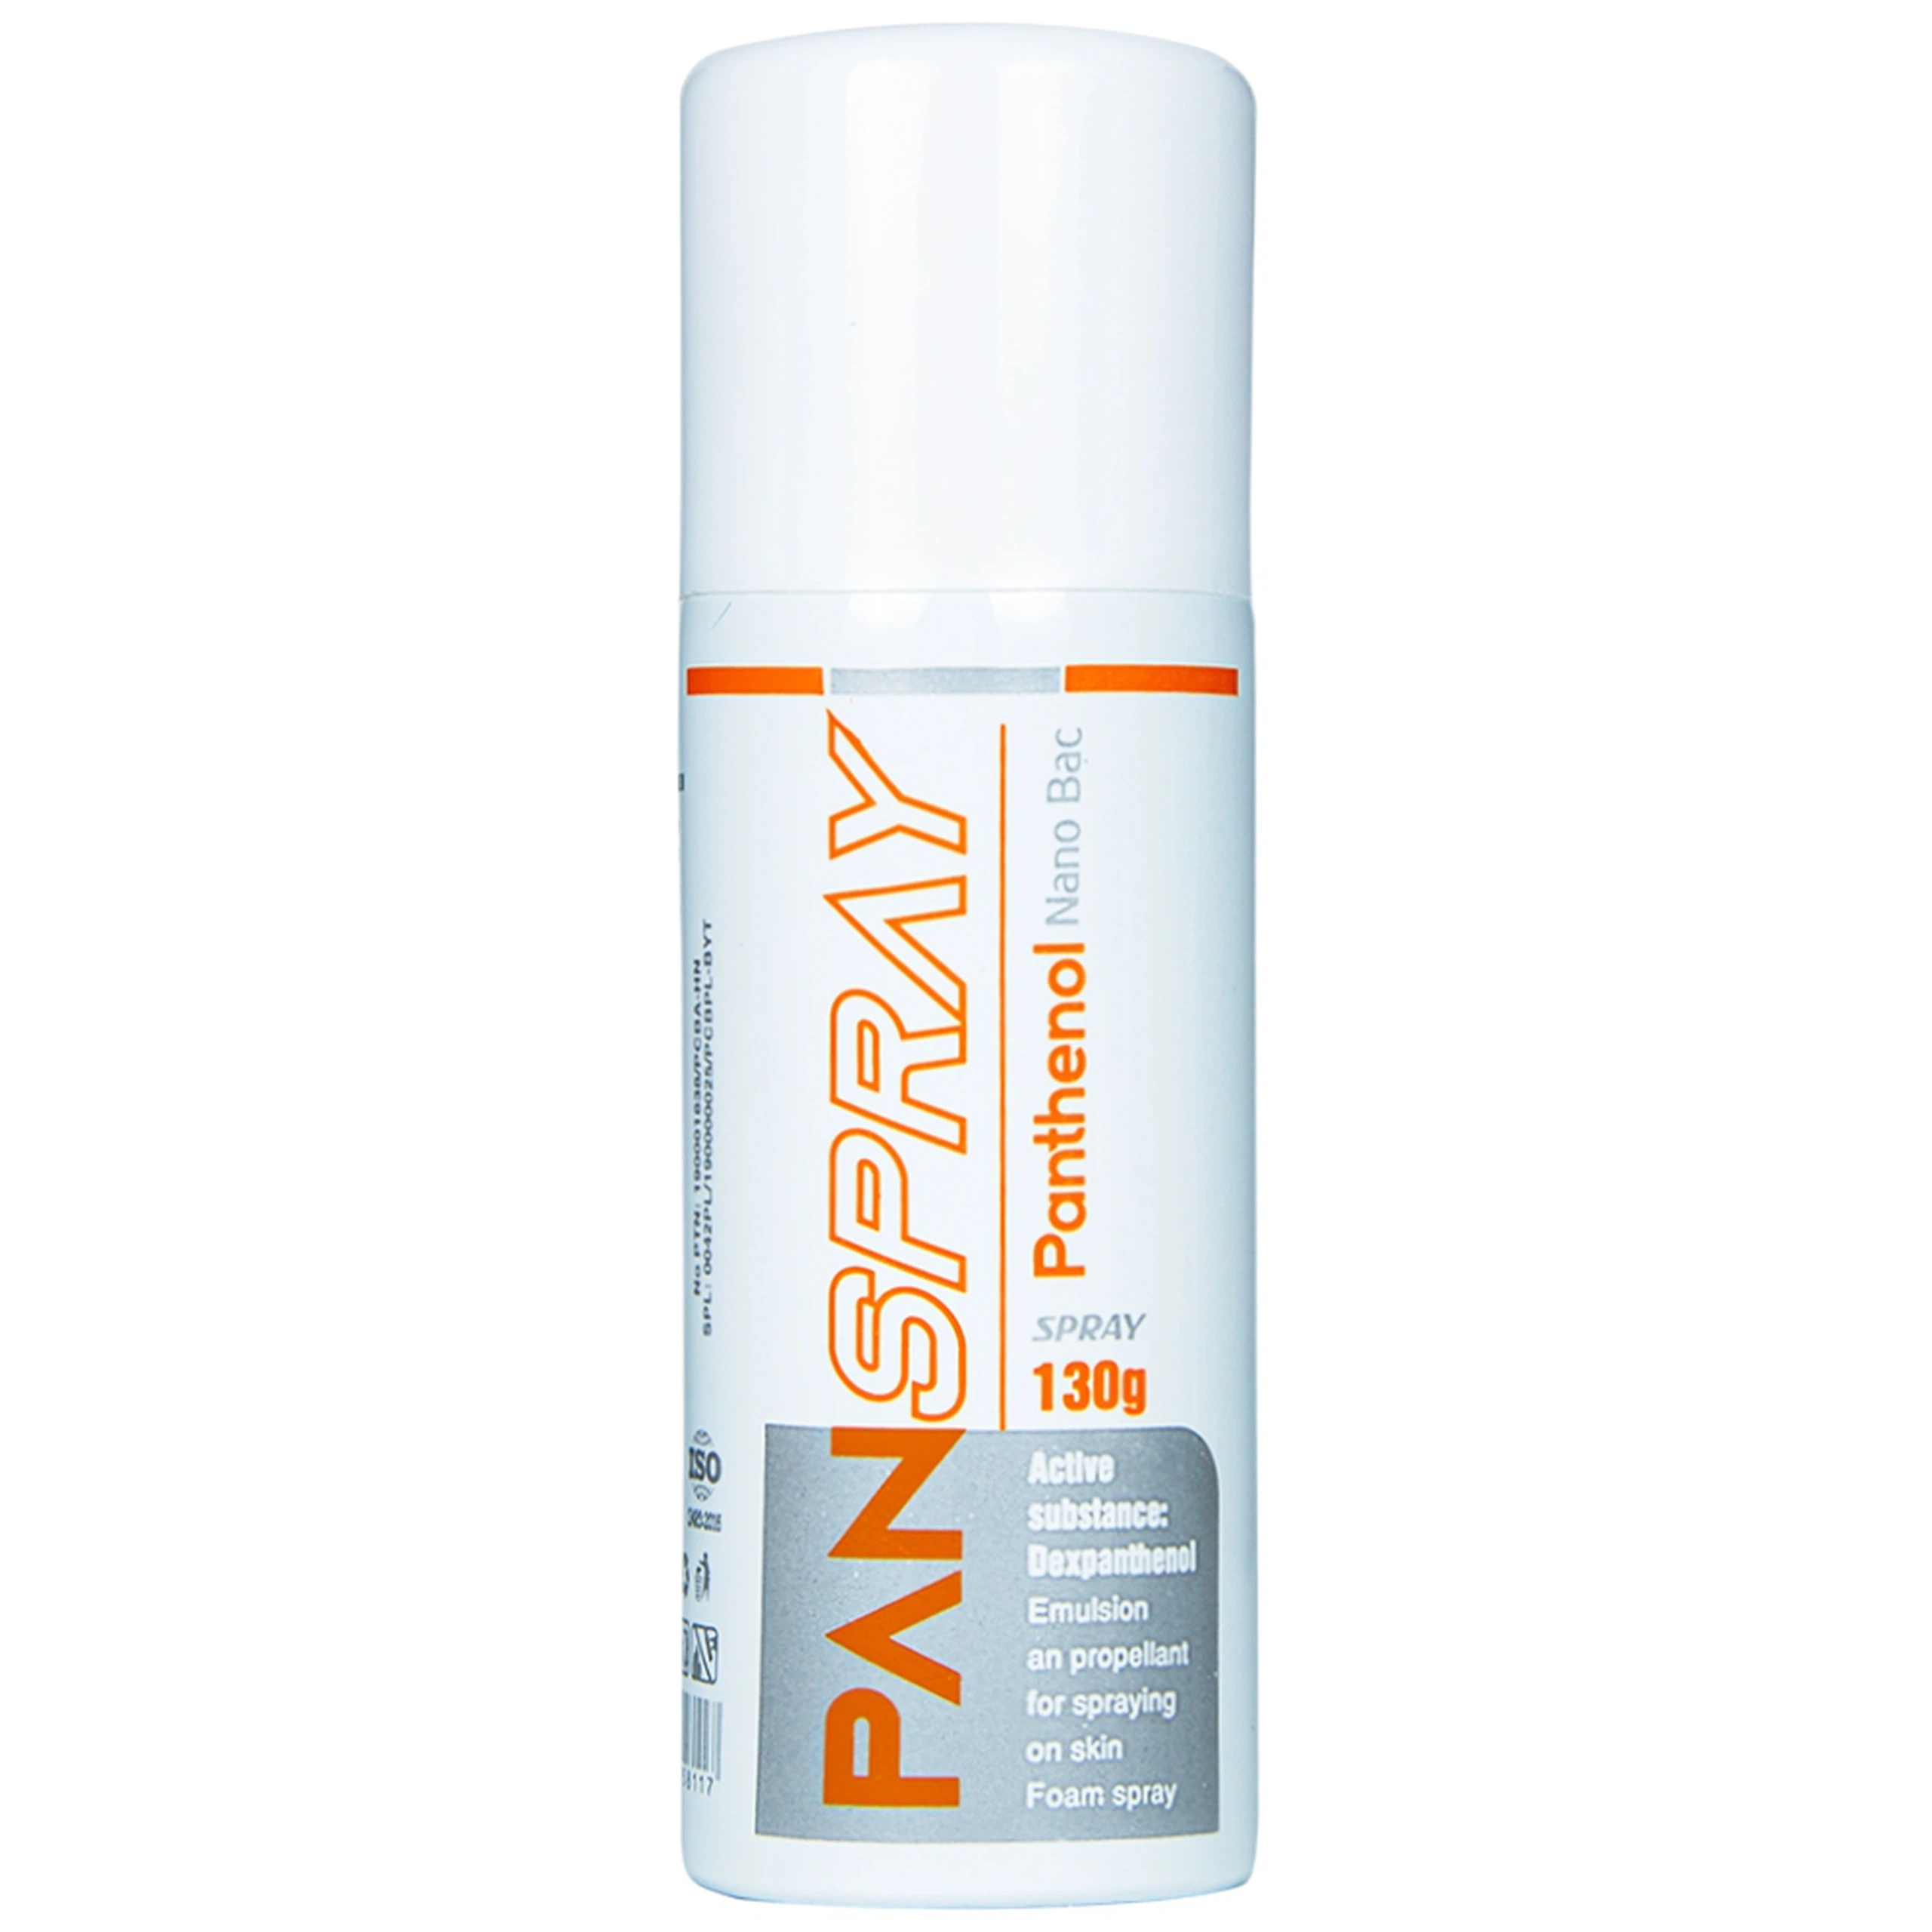 Xịt PanSpray Panthenol hỗ trợ giảm đau, rát, hạn chế tổn thương, viêm nhiễm da (130g)